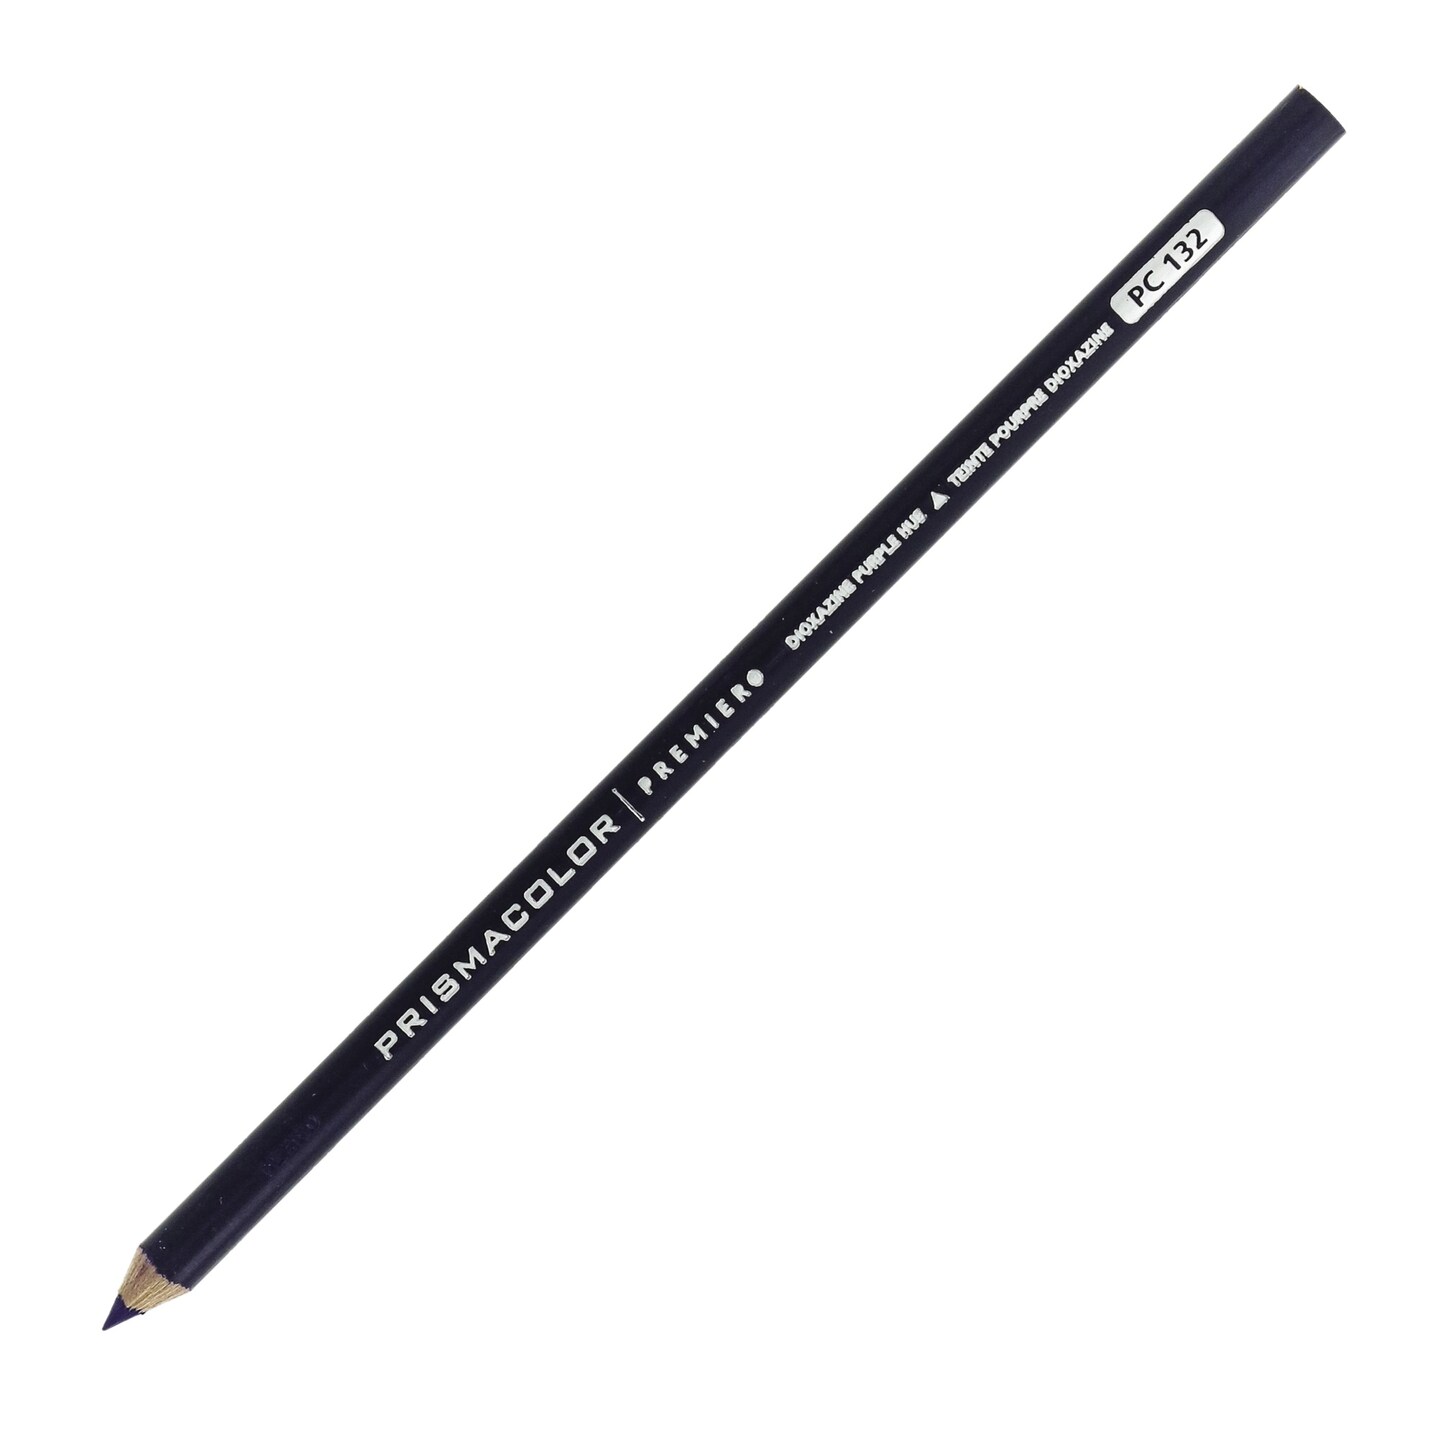 Prismacolor] Premier Soft Core Colored Pencils 132 Colored Pencils